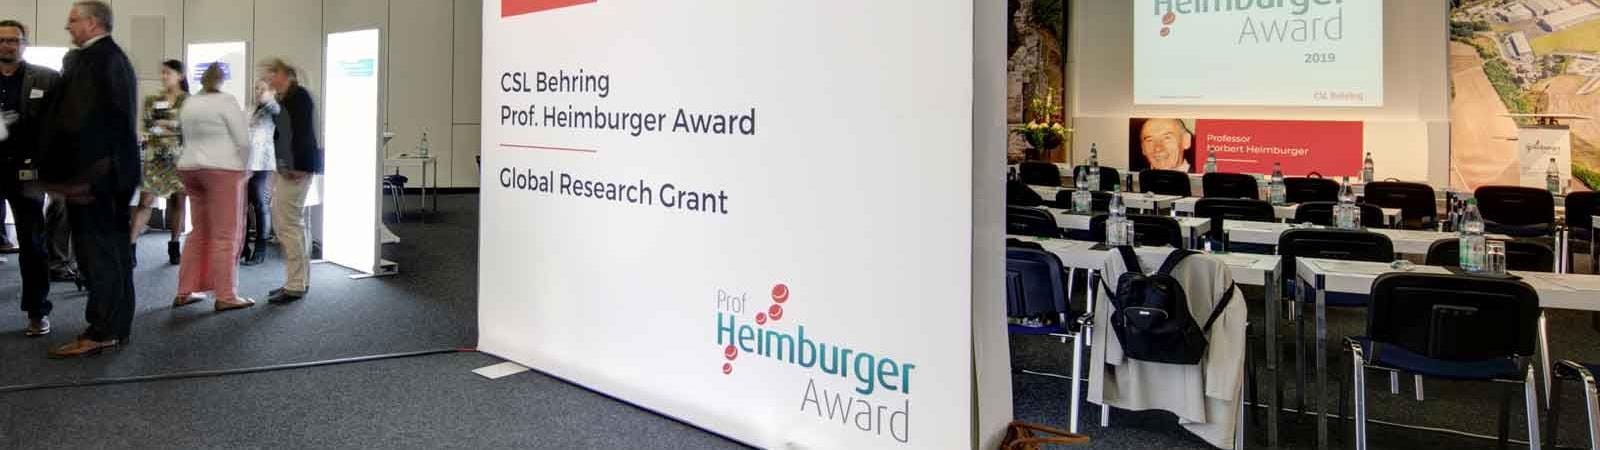 Professor Heimburger Award